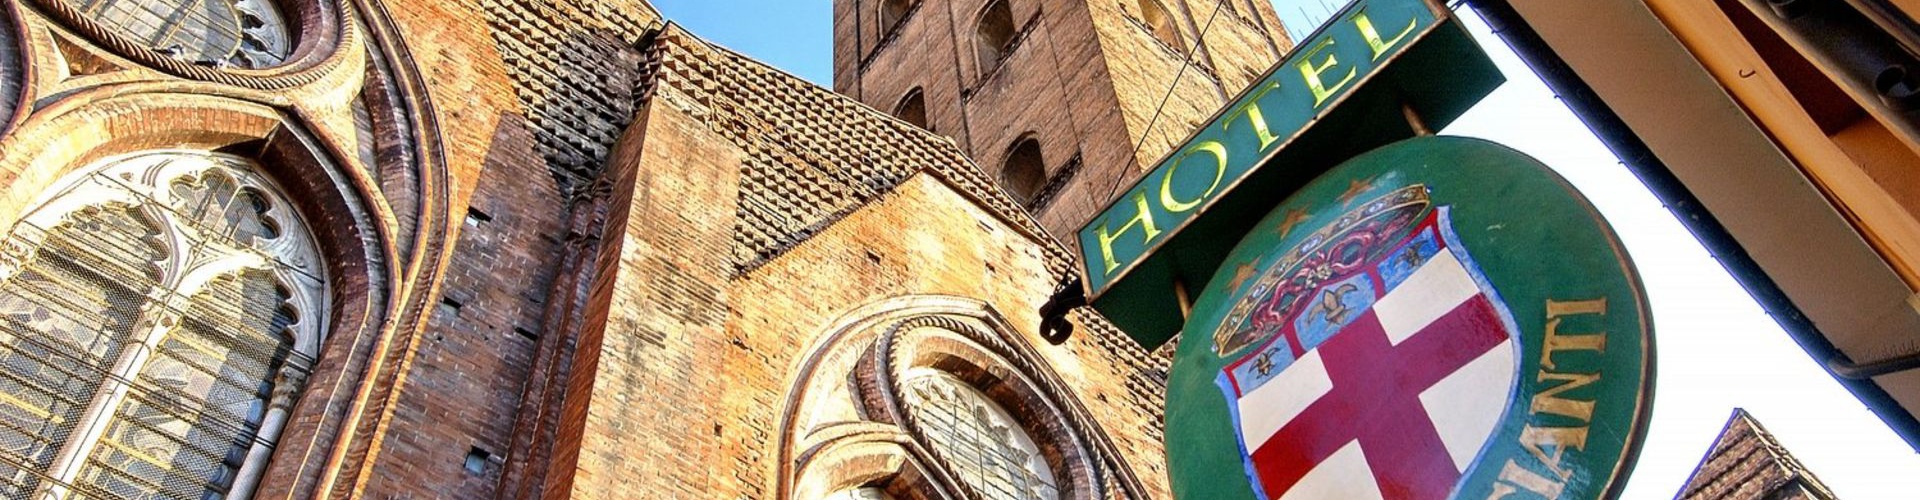 Commercianti Hotel rediseño - Bologna - La città etrusca: un’altra faccia di Bologna